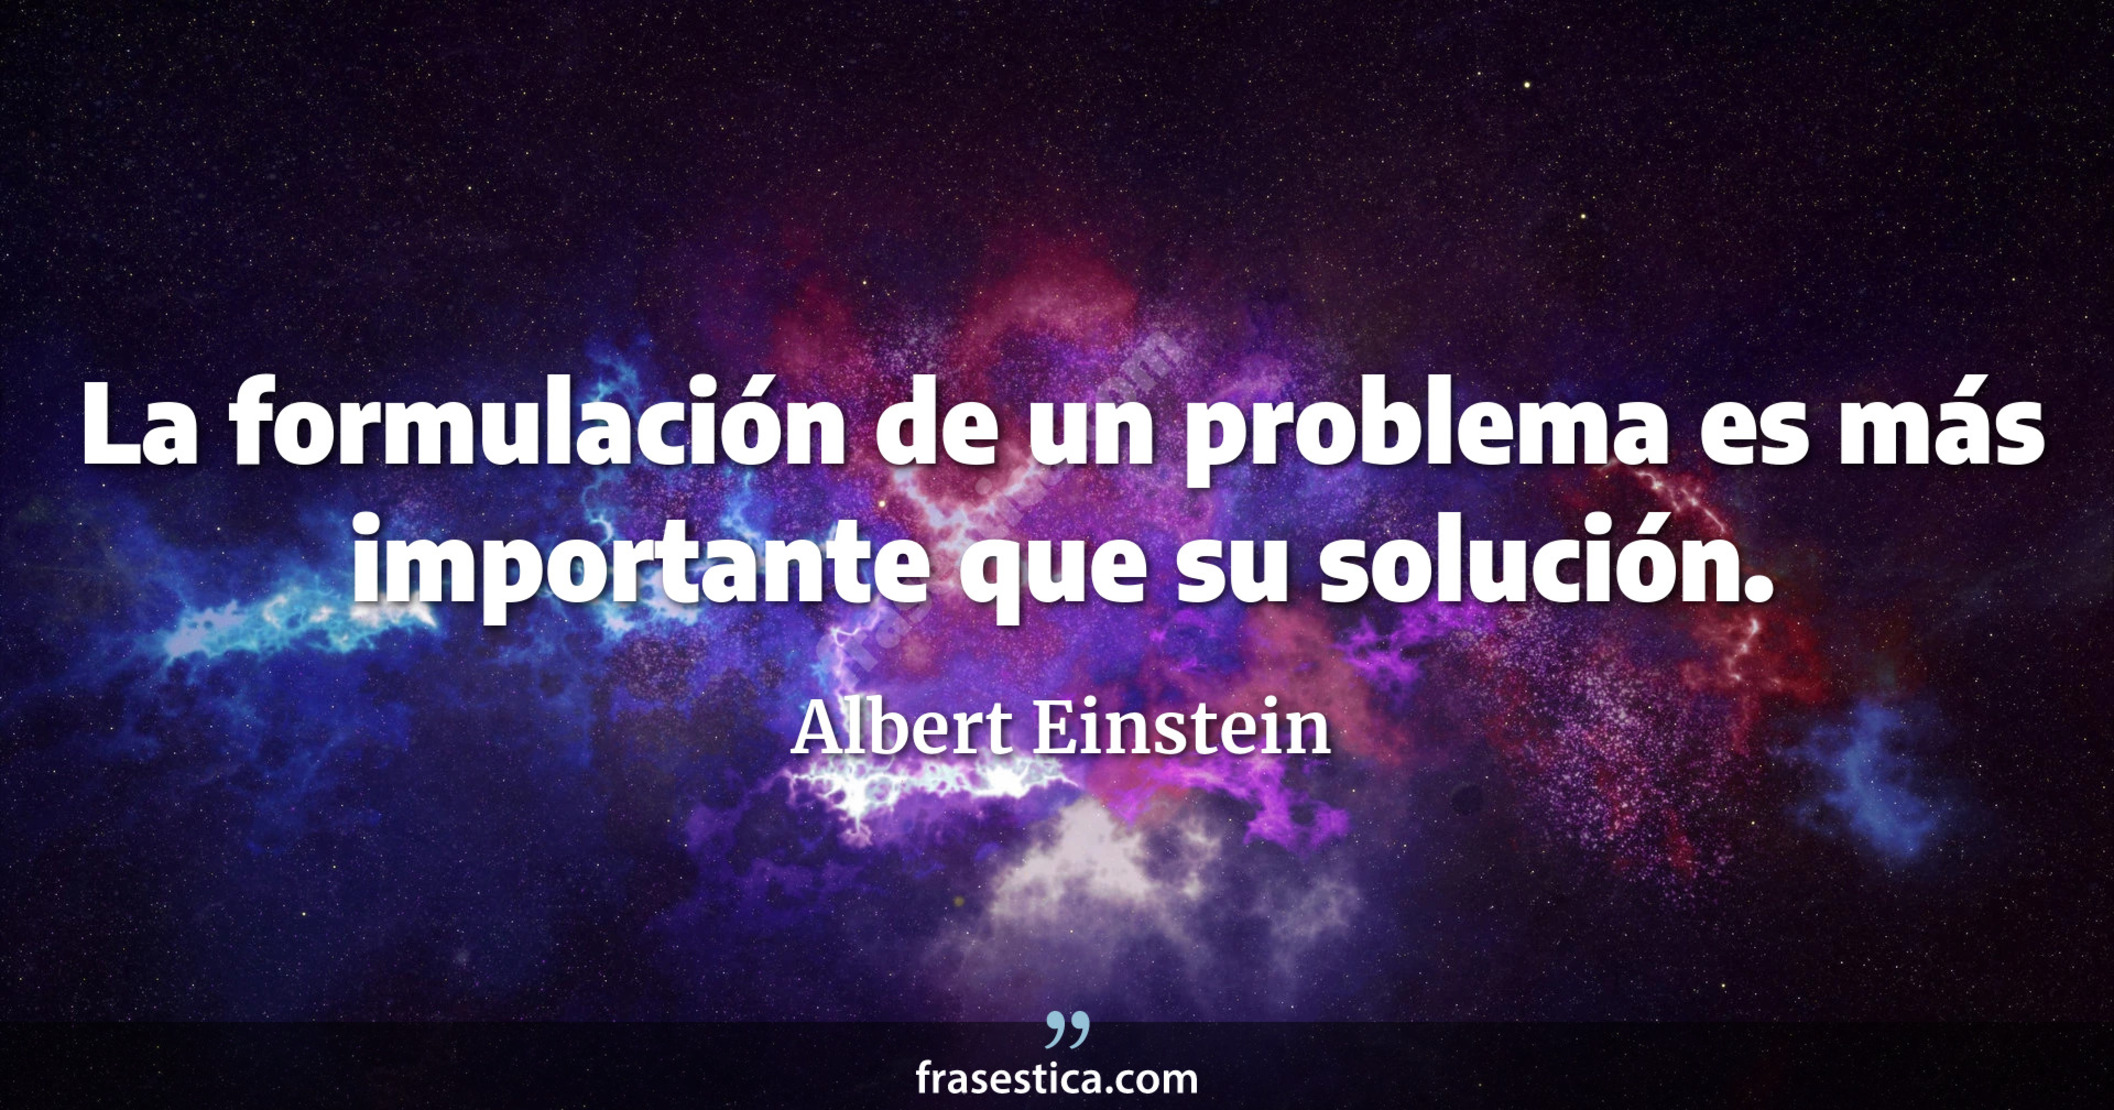 La formulación de un problema es más importante que su solución. - Albert Einstein